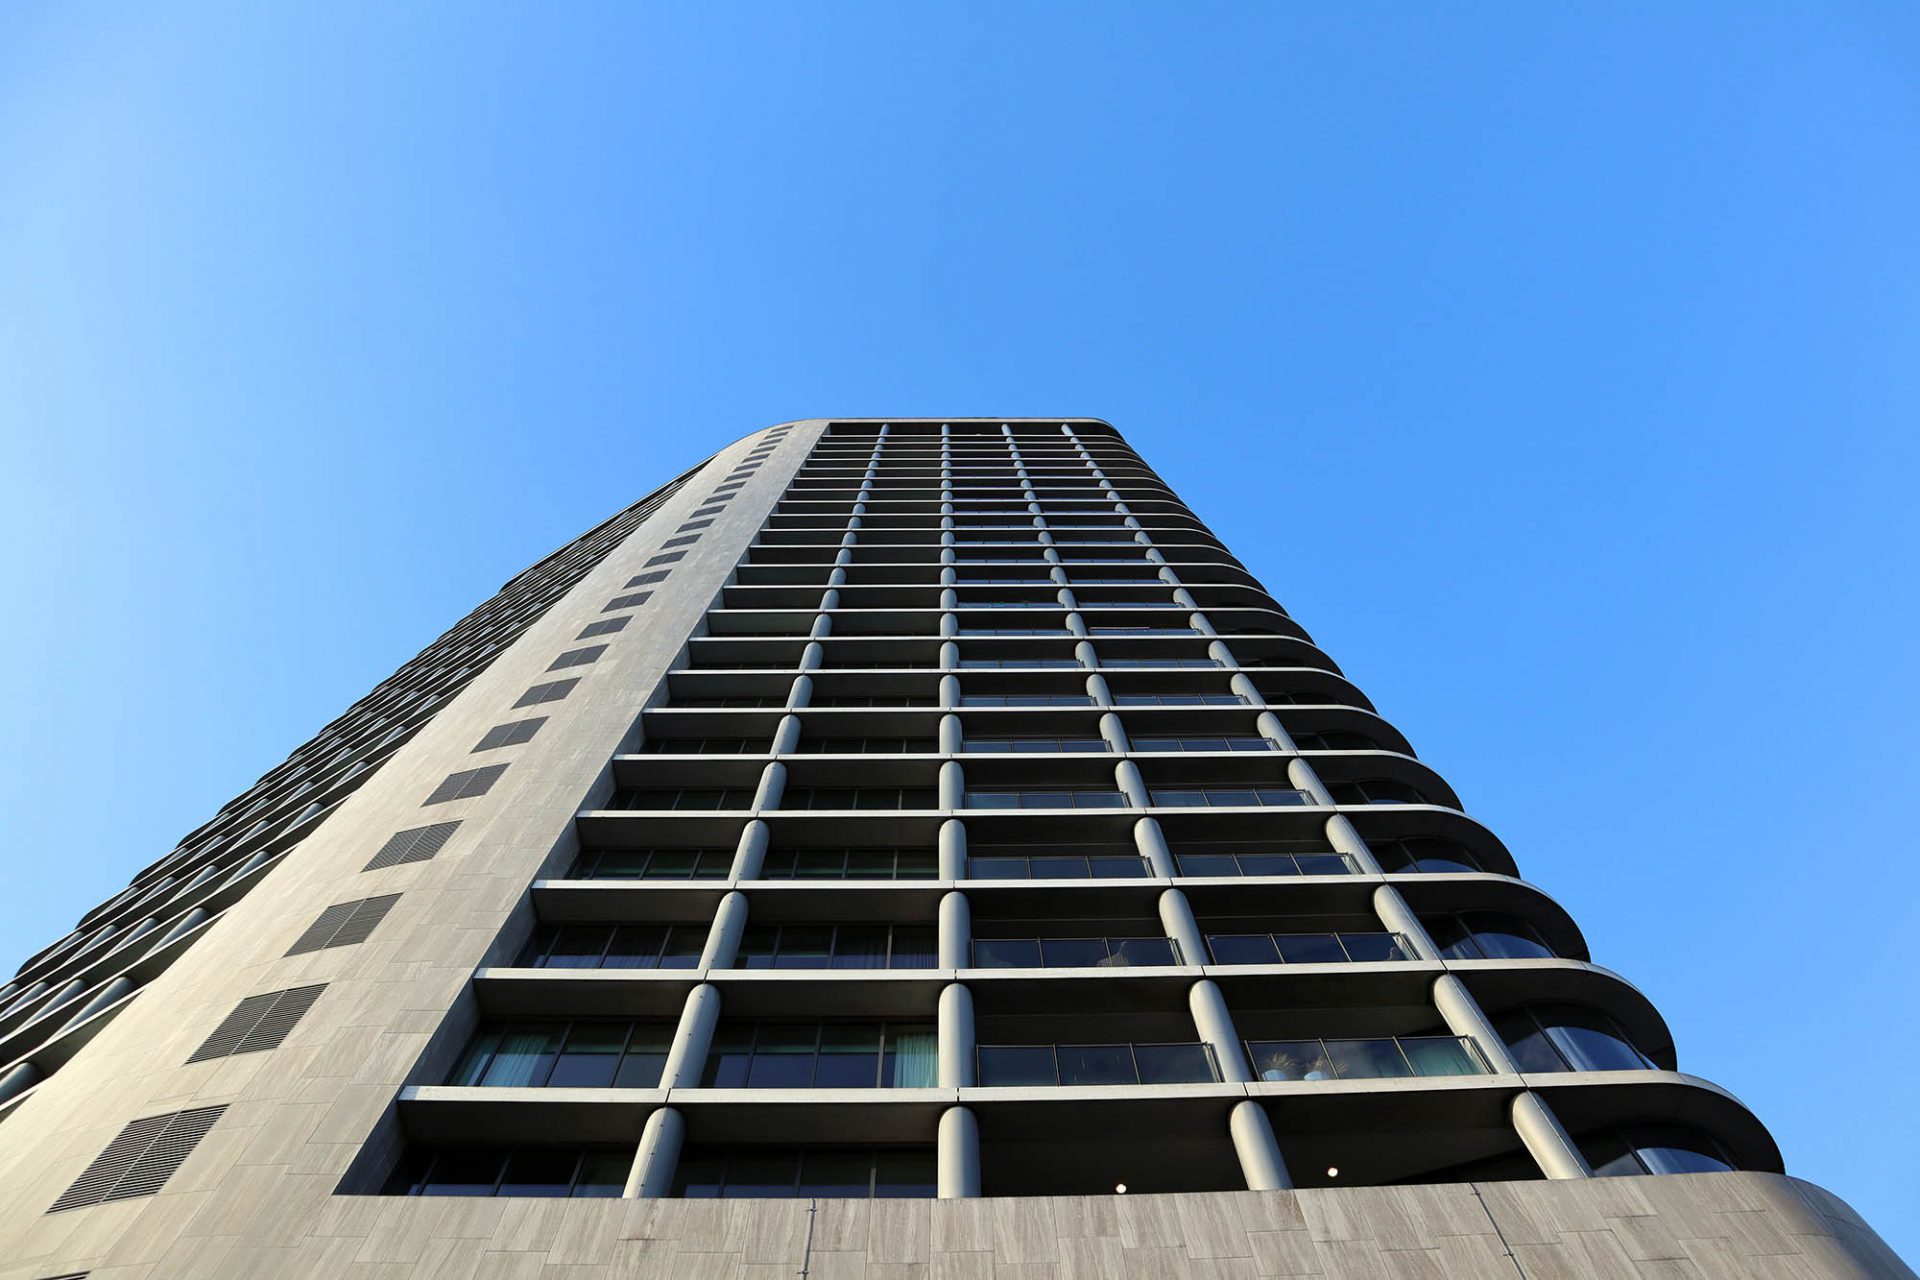 Vesteda –Turm. Der schlanke Turm des Niederländers Jo Coenen gehört zu den neuen Landmarken der Stadt.